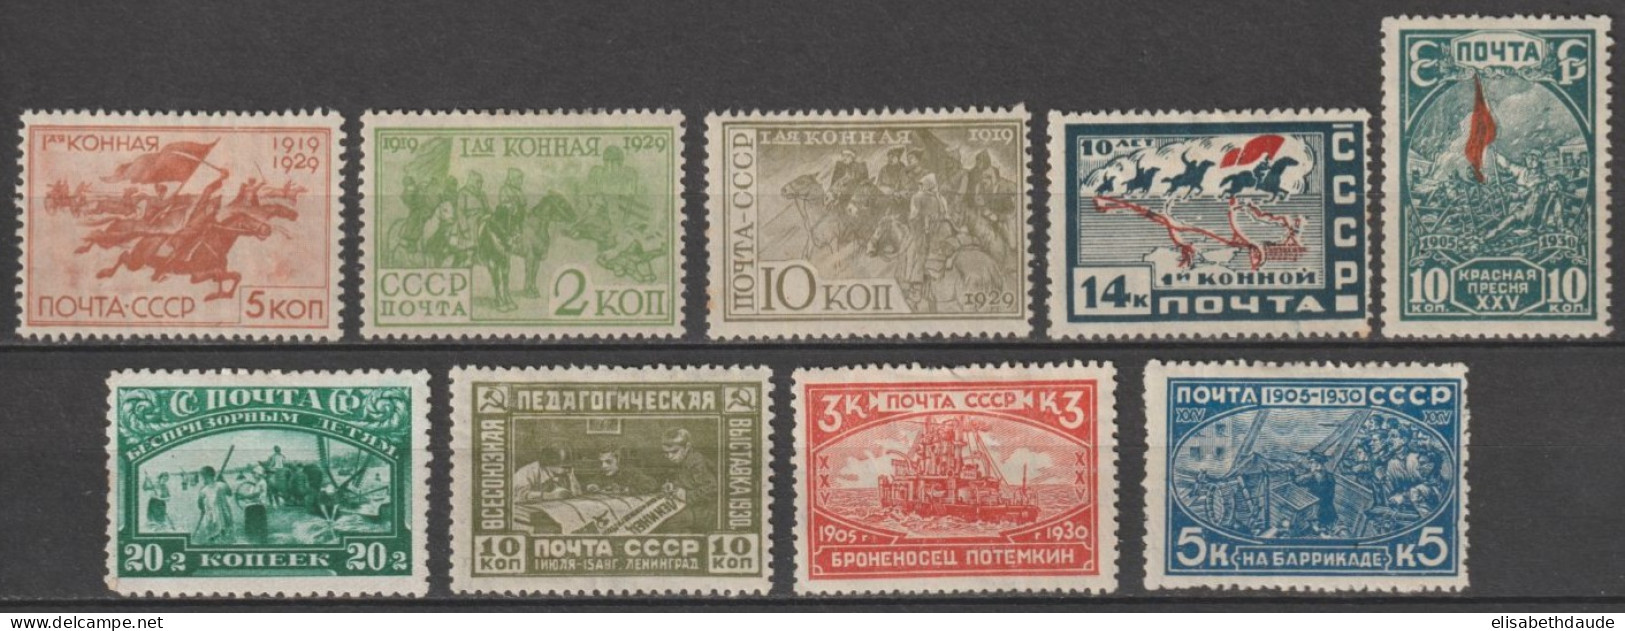 URSS - 1930 - YVERT N°449/454 + 457/459 * MH - COTE = 47 EUR. - Unused Stamps